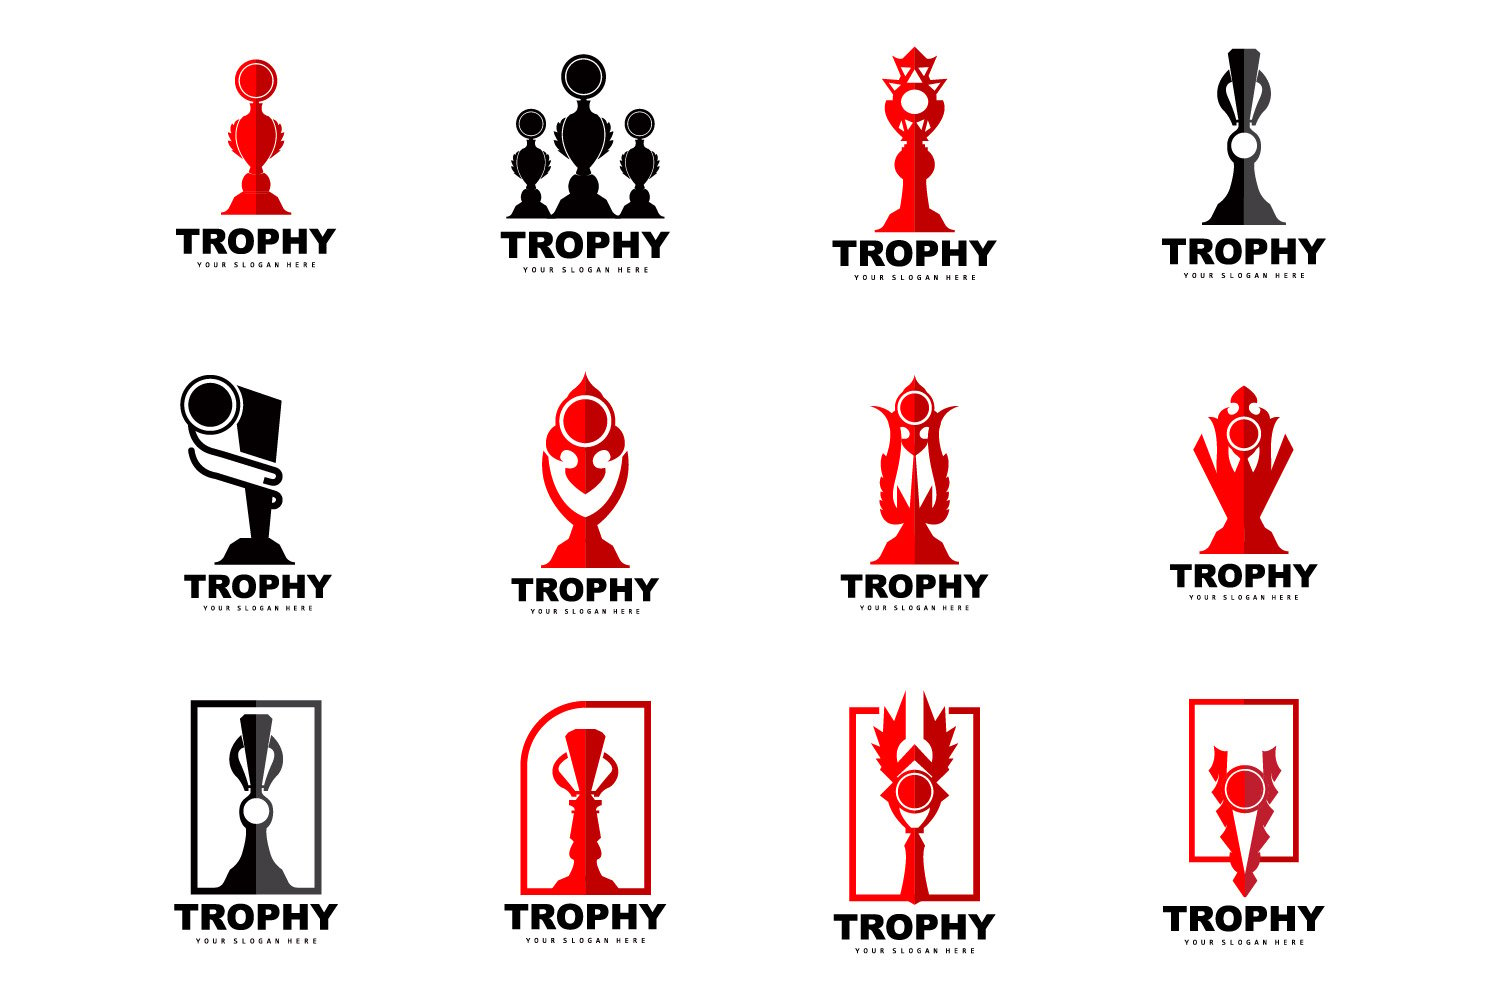 Kit Graphique #404673 Trophy Win Divers Modles Web - Logo template Preview